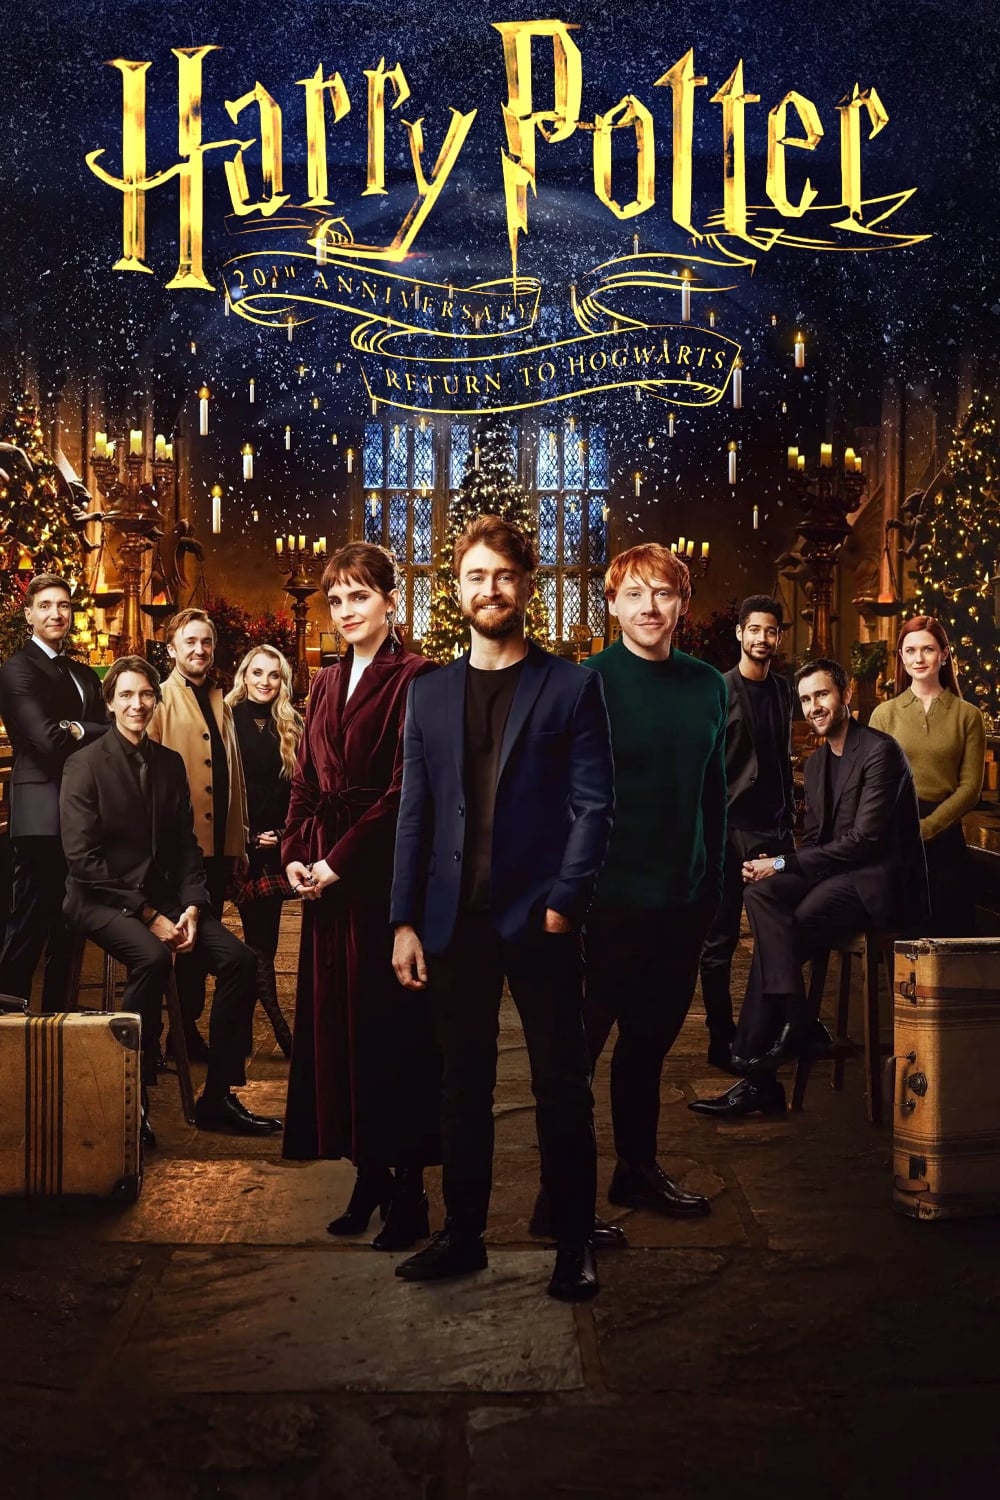 Comemoração de 20 anos de Harry Potter: De Volta a Hogwarts